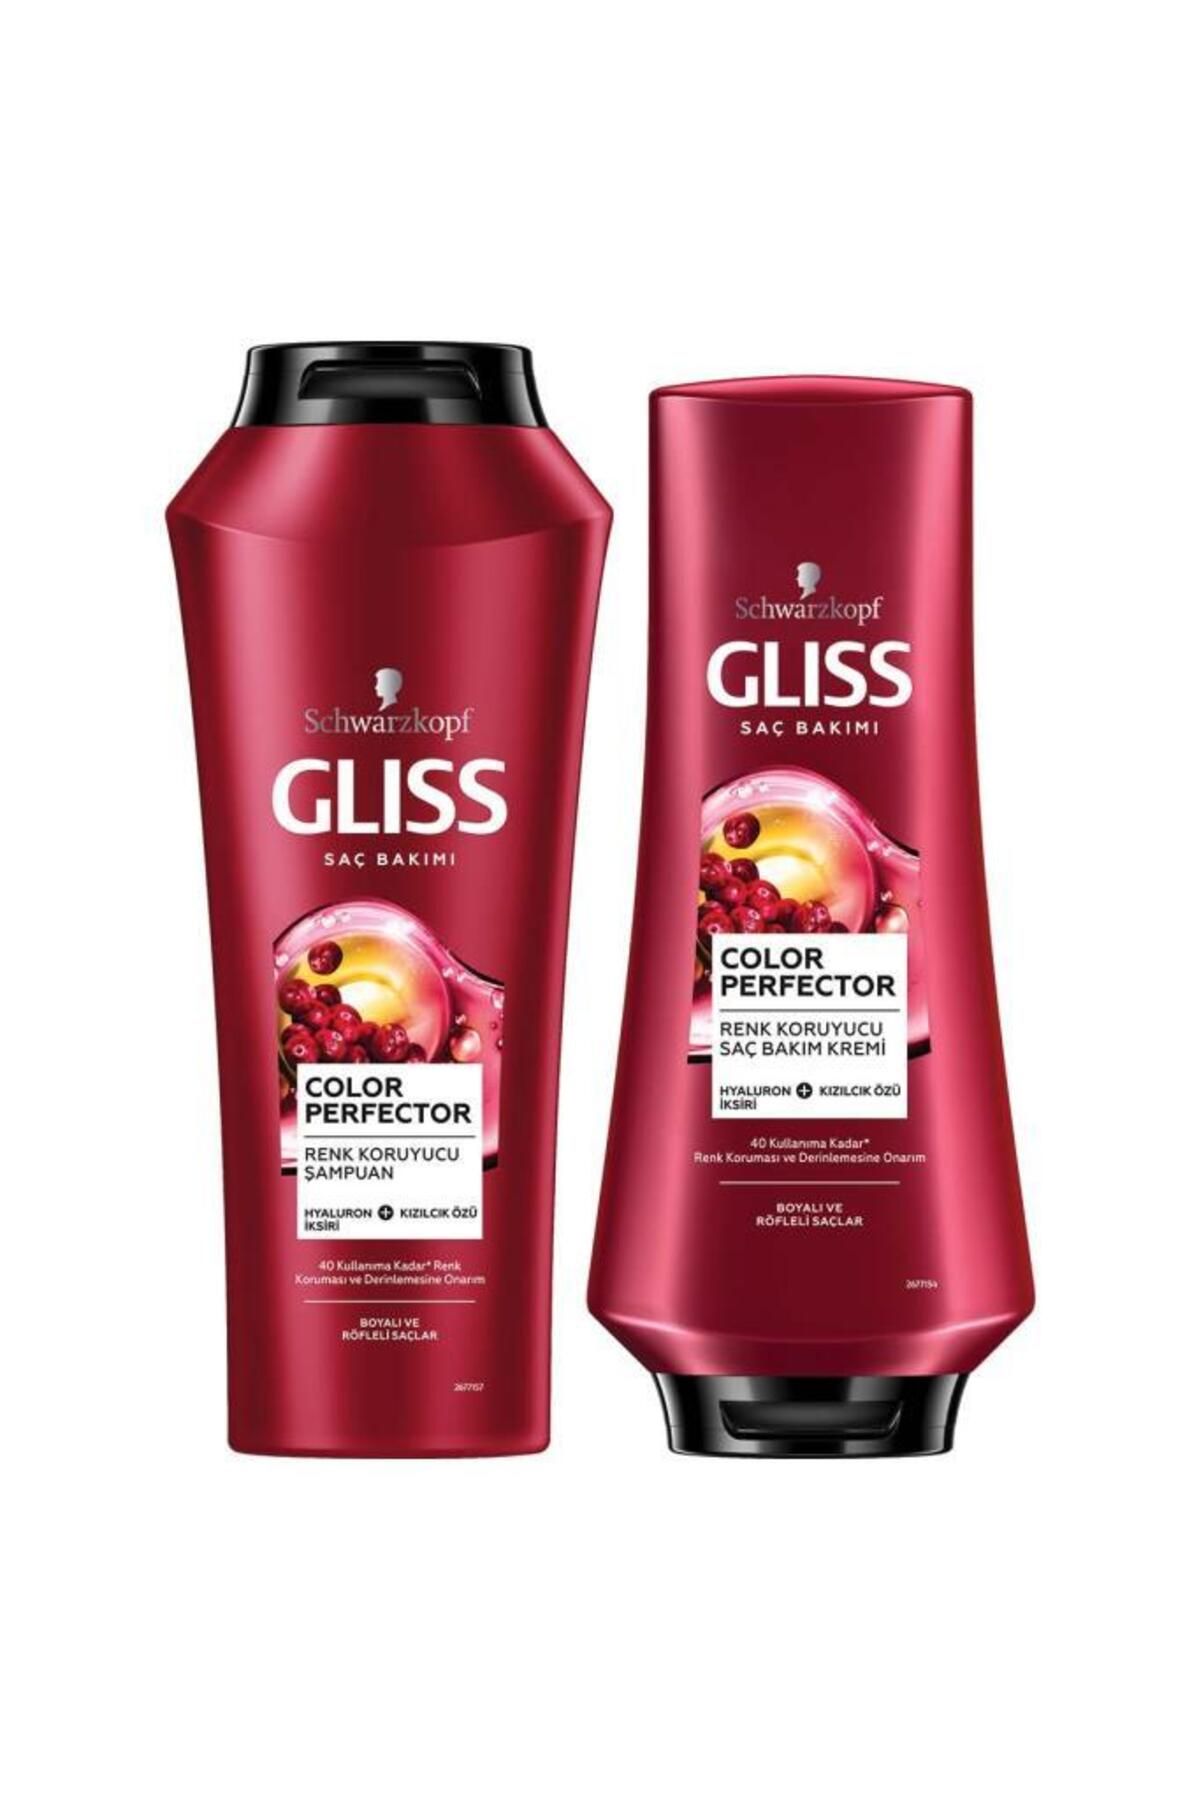 Gliss Color Perfector Renk Koruyucu Şampuan 500 ml Color Perfector Saç Kremi 360 ml